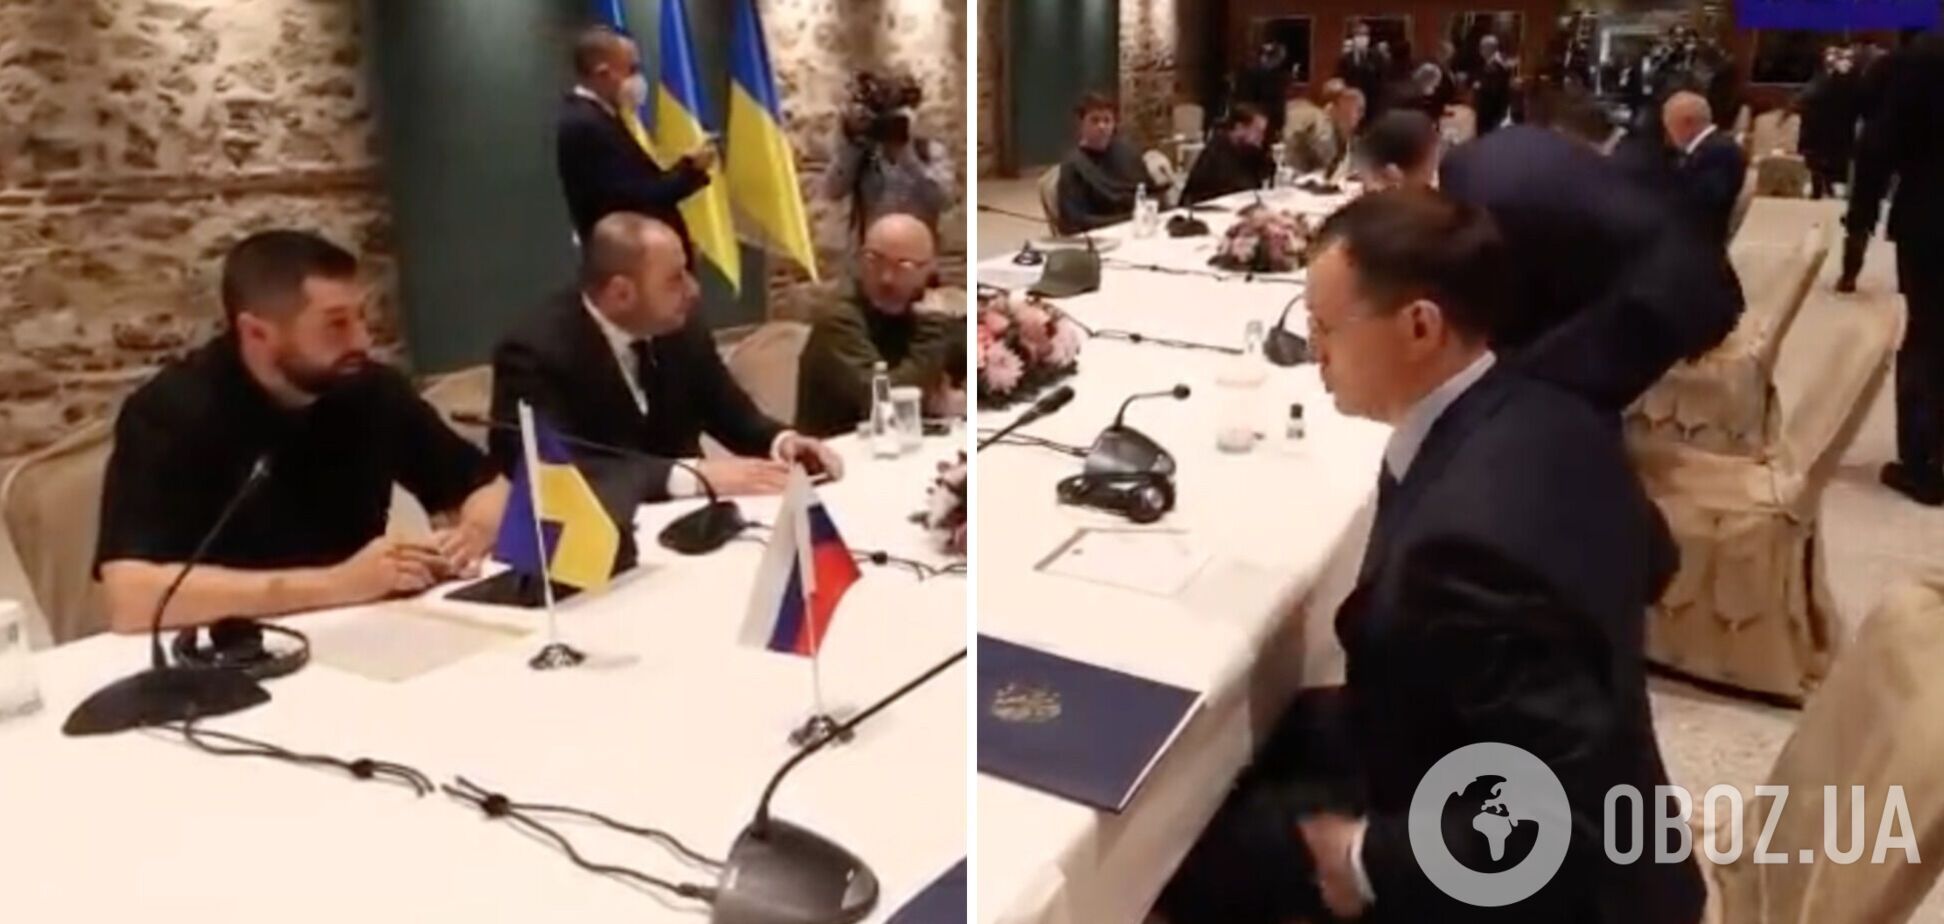 Арахамия на переговорах объяснил помощнику Путина, что на столе стоит антисептик: тот подумал, водка. Видео